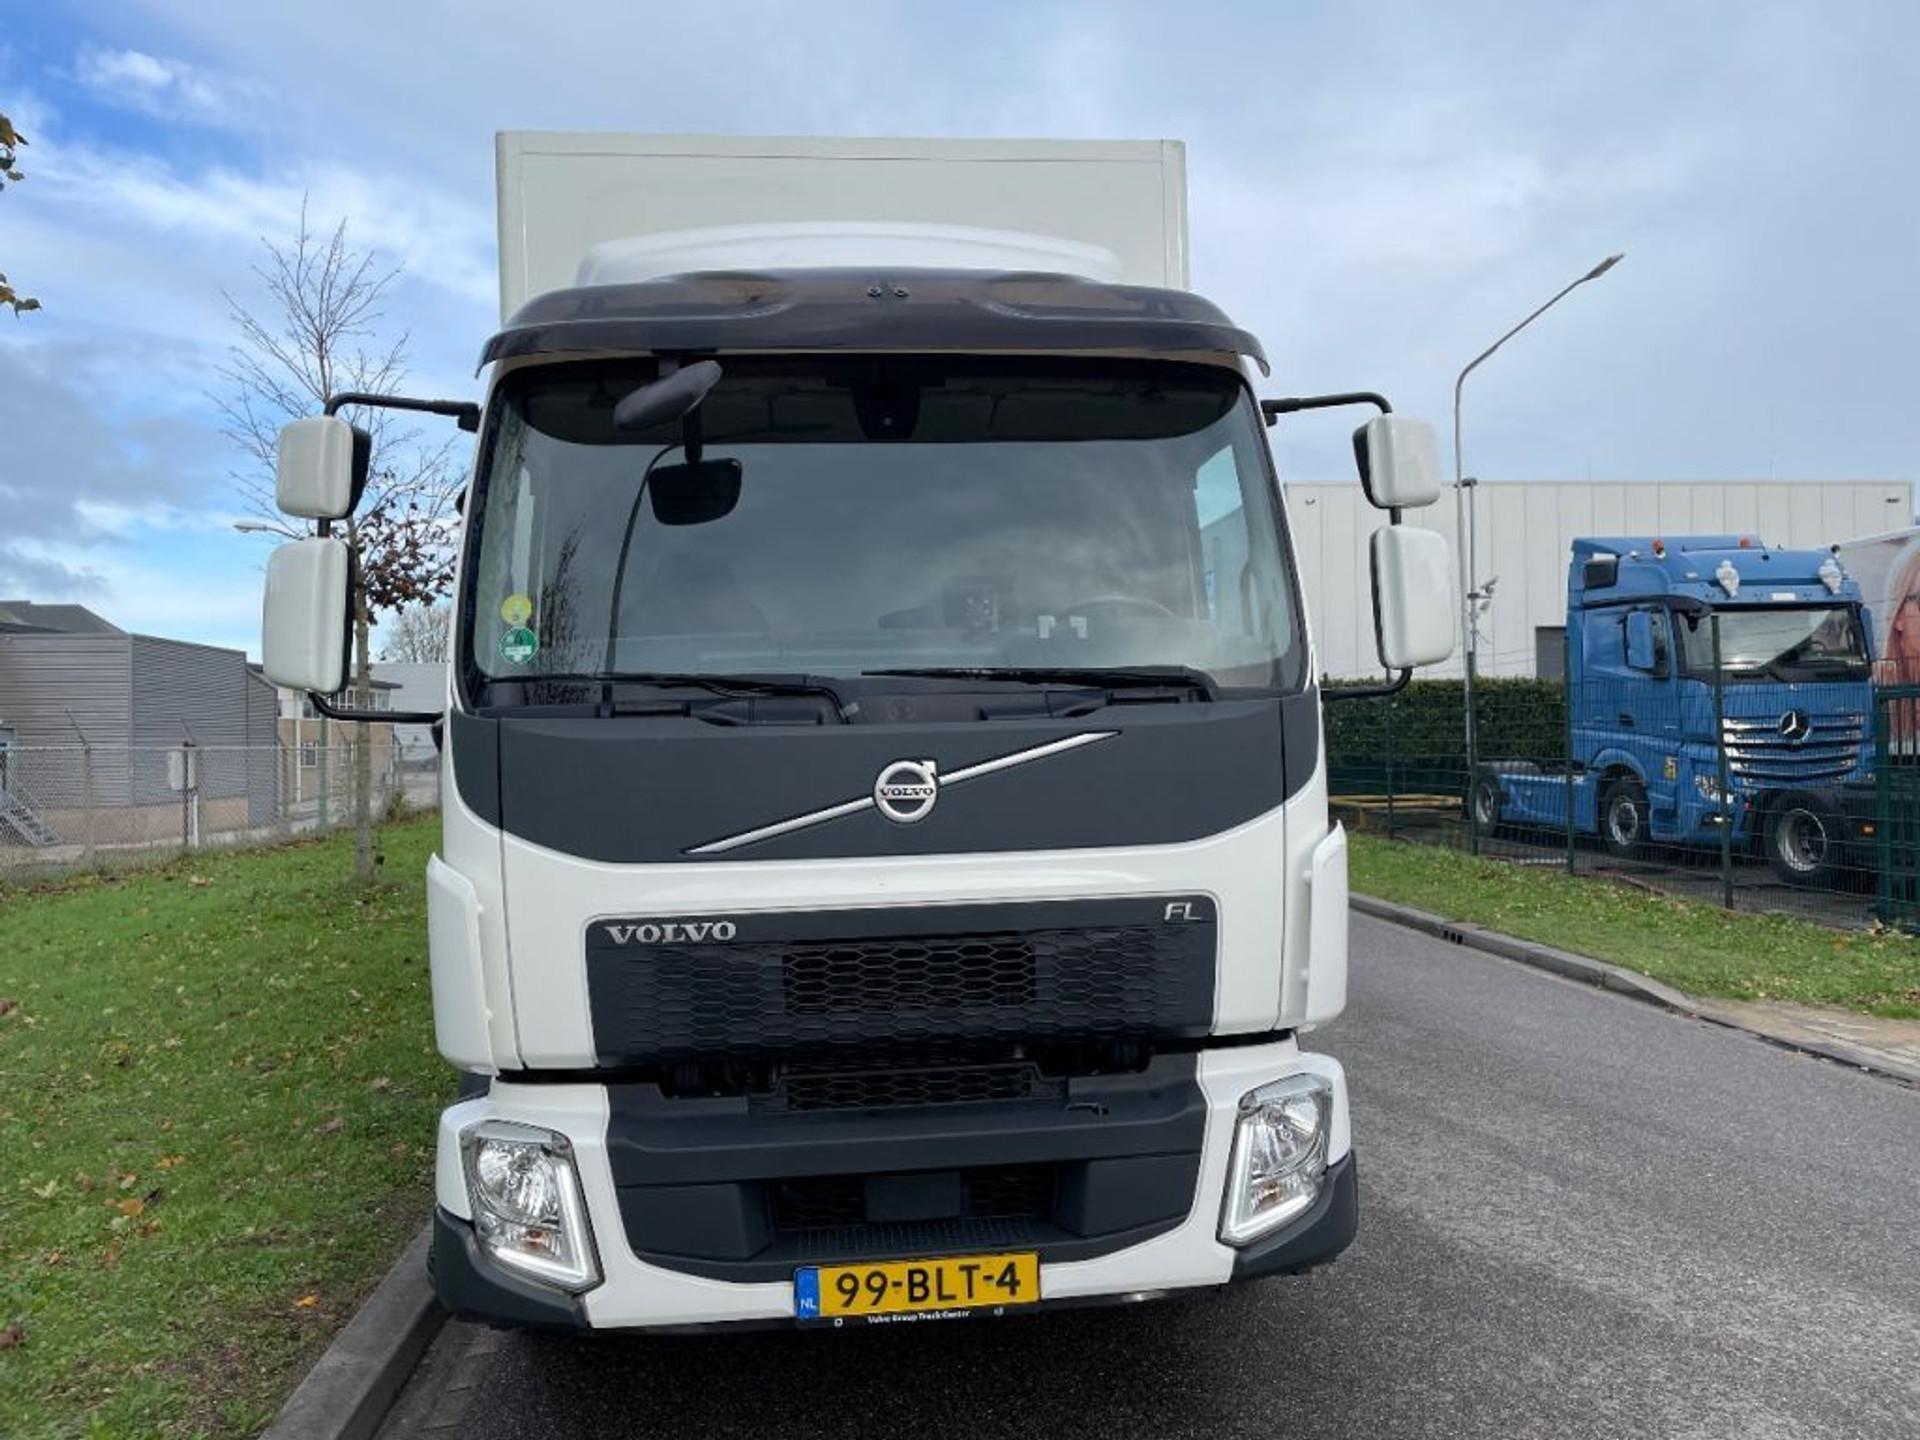 Foto 29 van Volvo FL verhuiswagen 2019 only 133.000 km